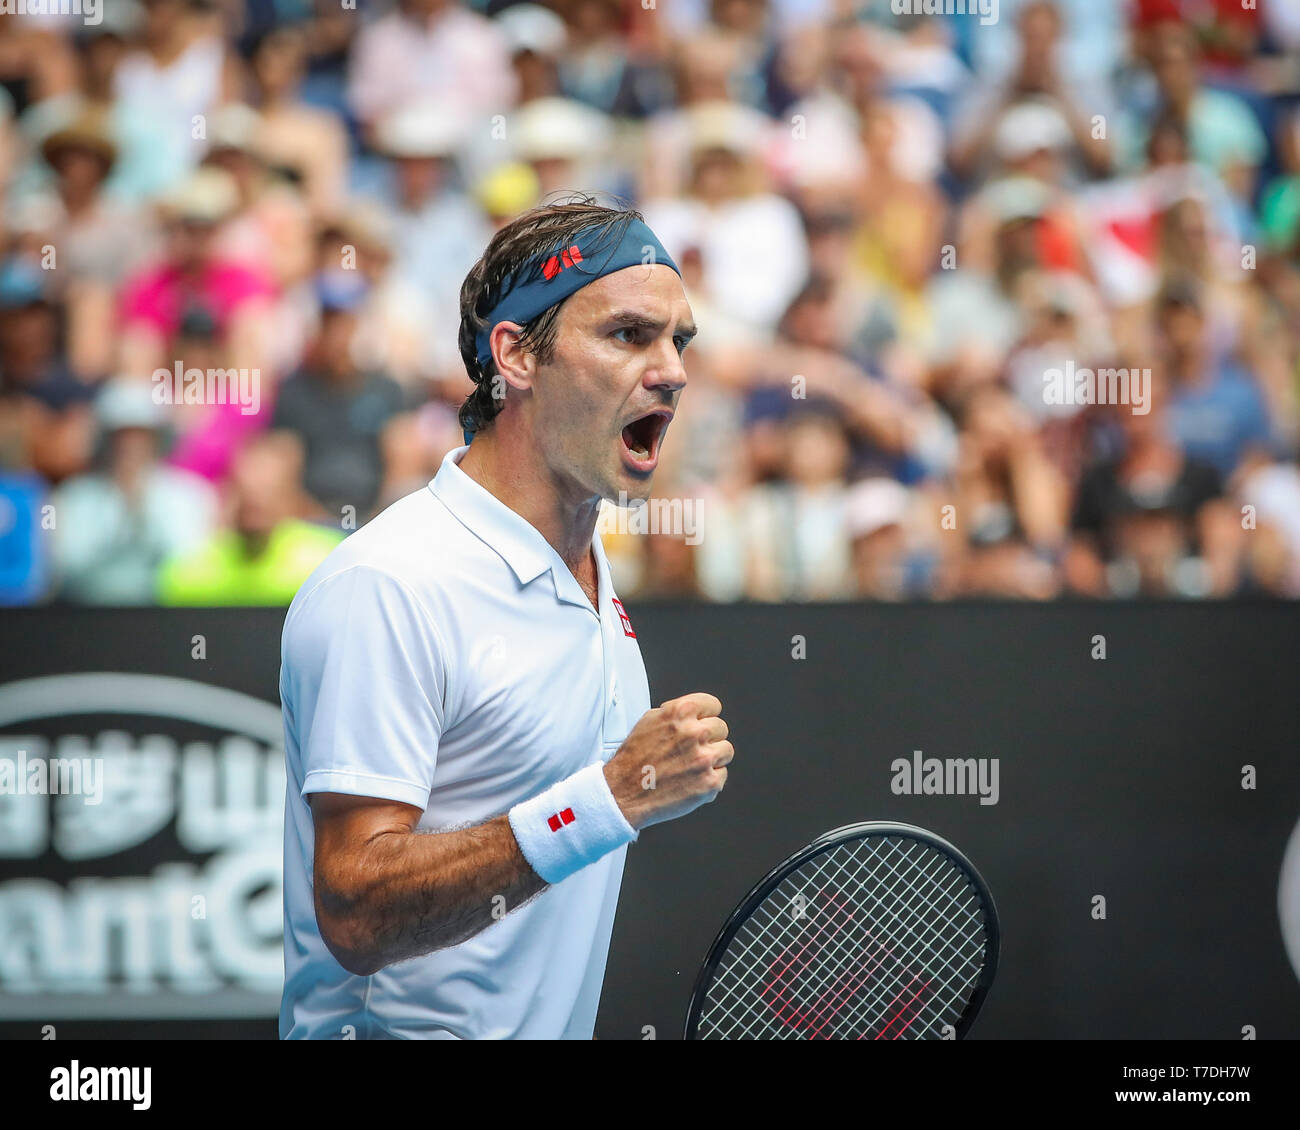 Swiss tennis player Roger Federer celebrating during Australian Open ...